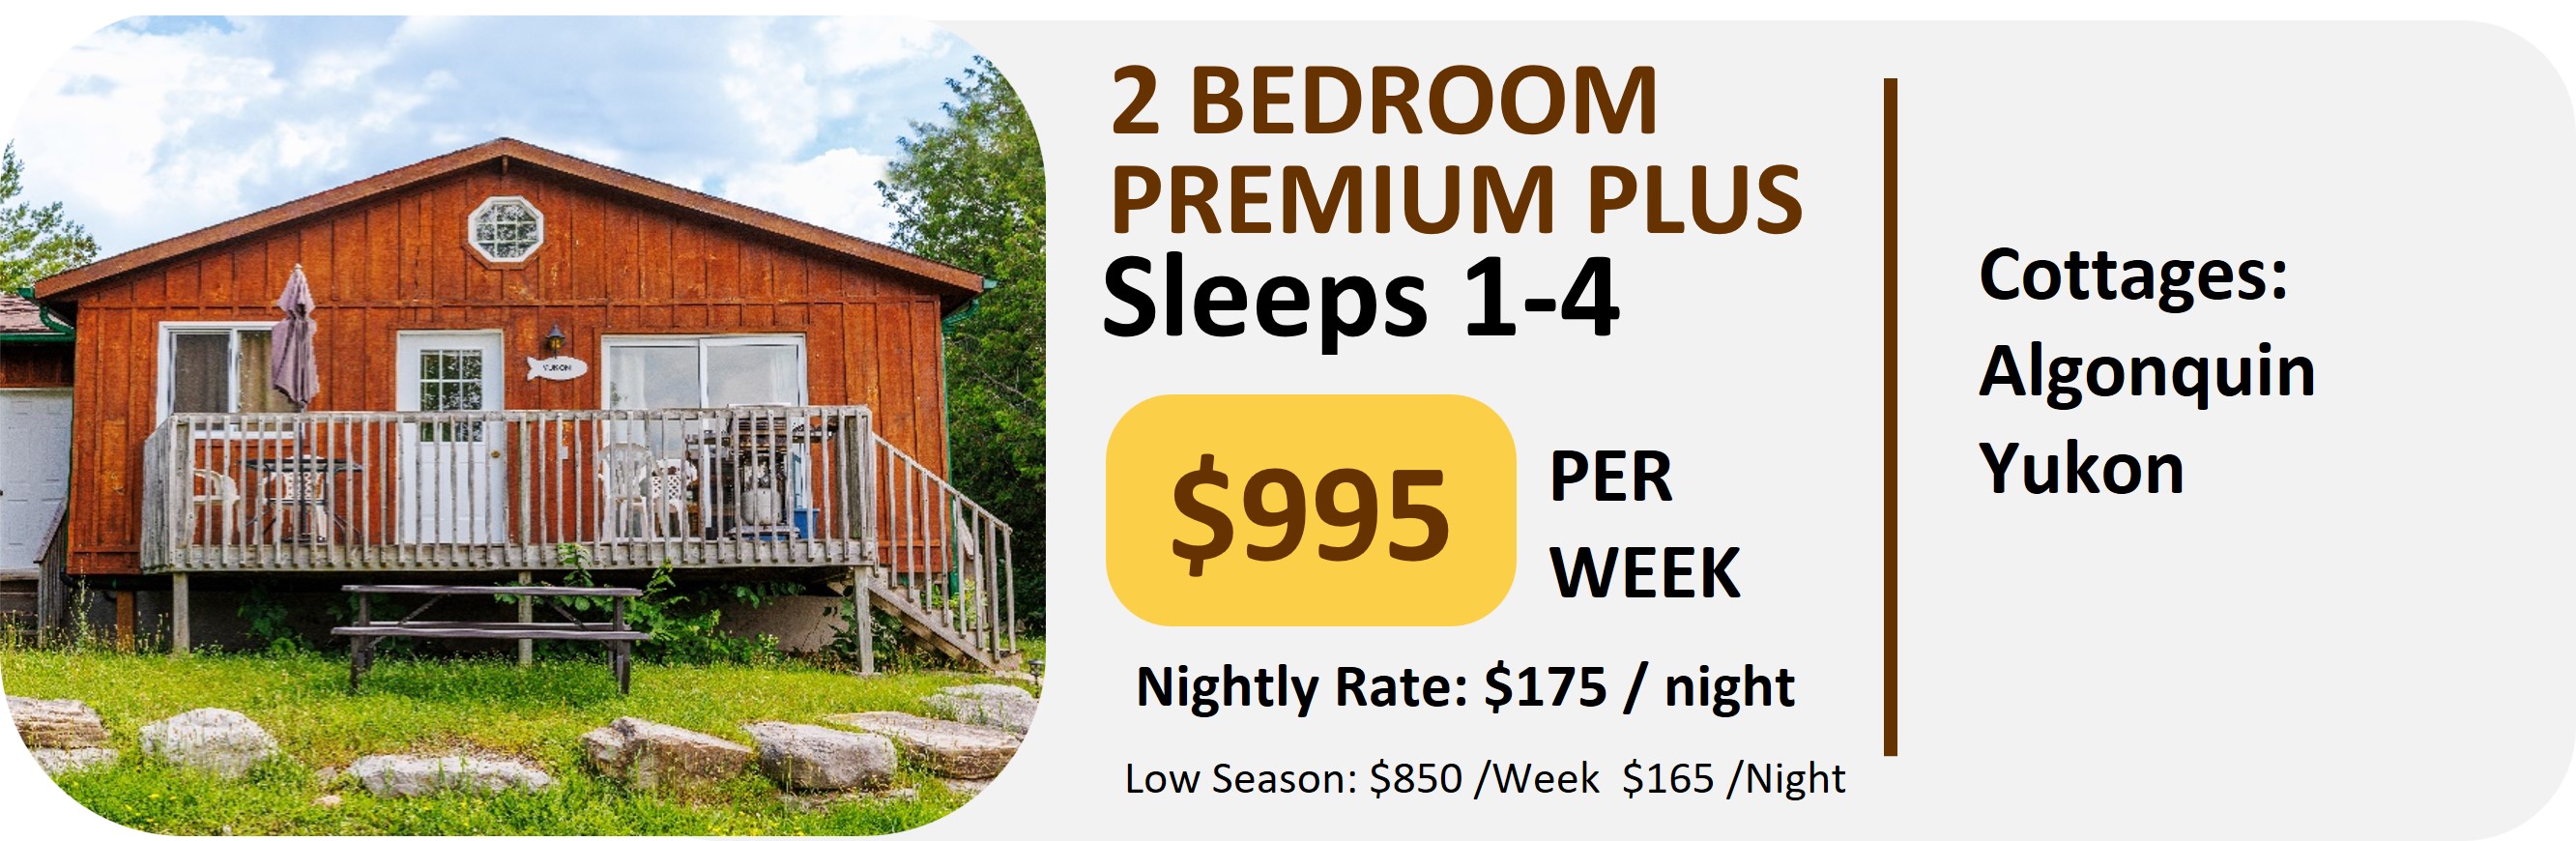 2 Bedroom Premium Plus